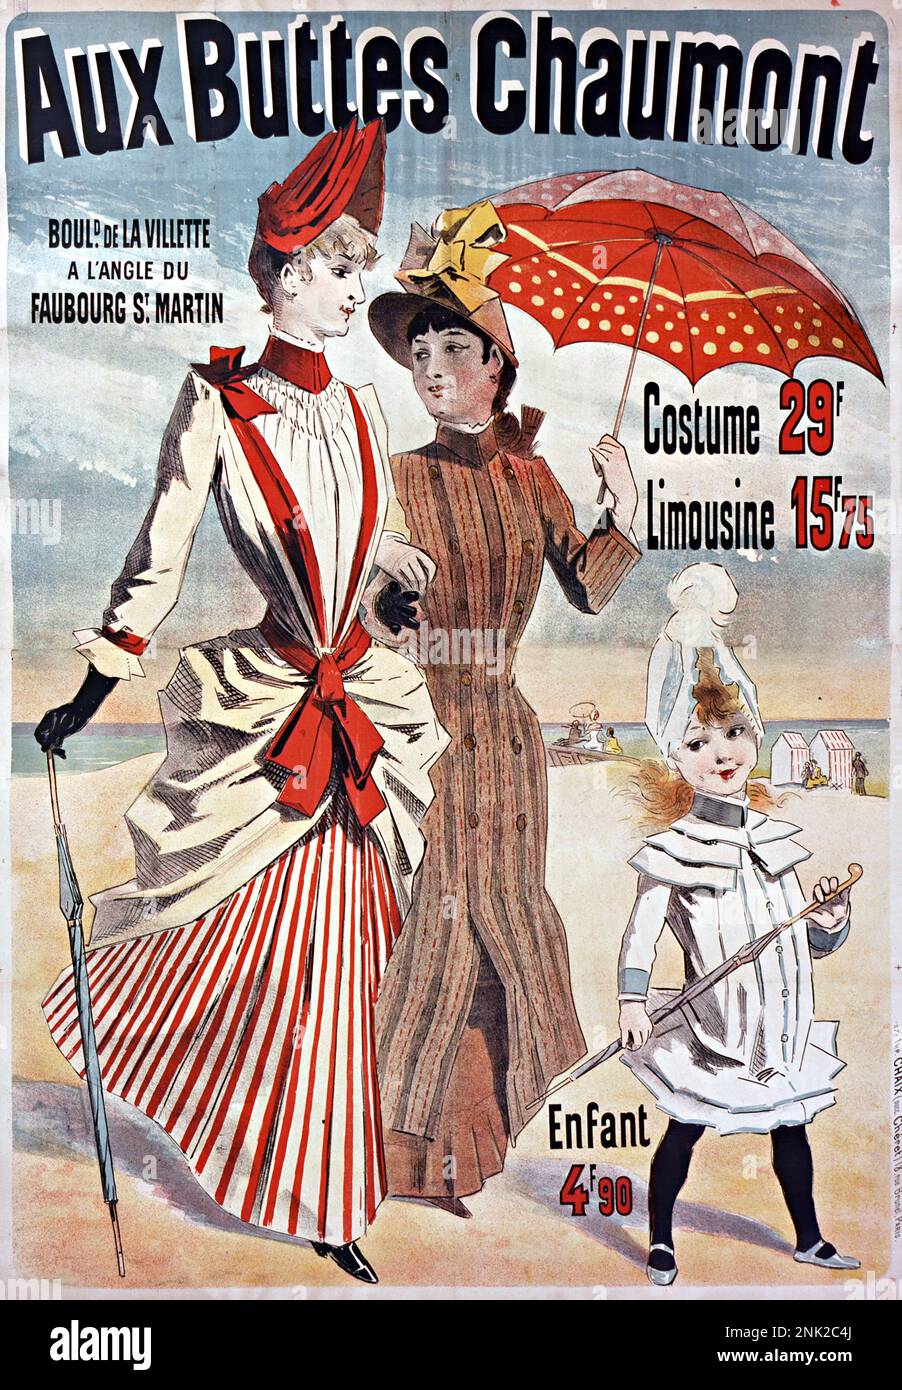 Viktorianisches Poster zur Illustration von Werbeanzeigen für Herren- und Damenbekleidung, ca. 1899 Stockfoto